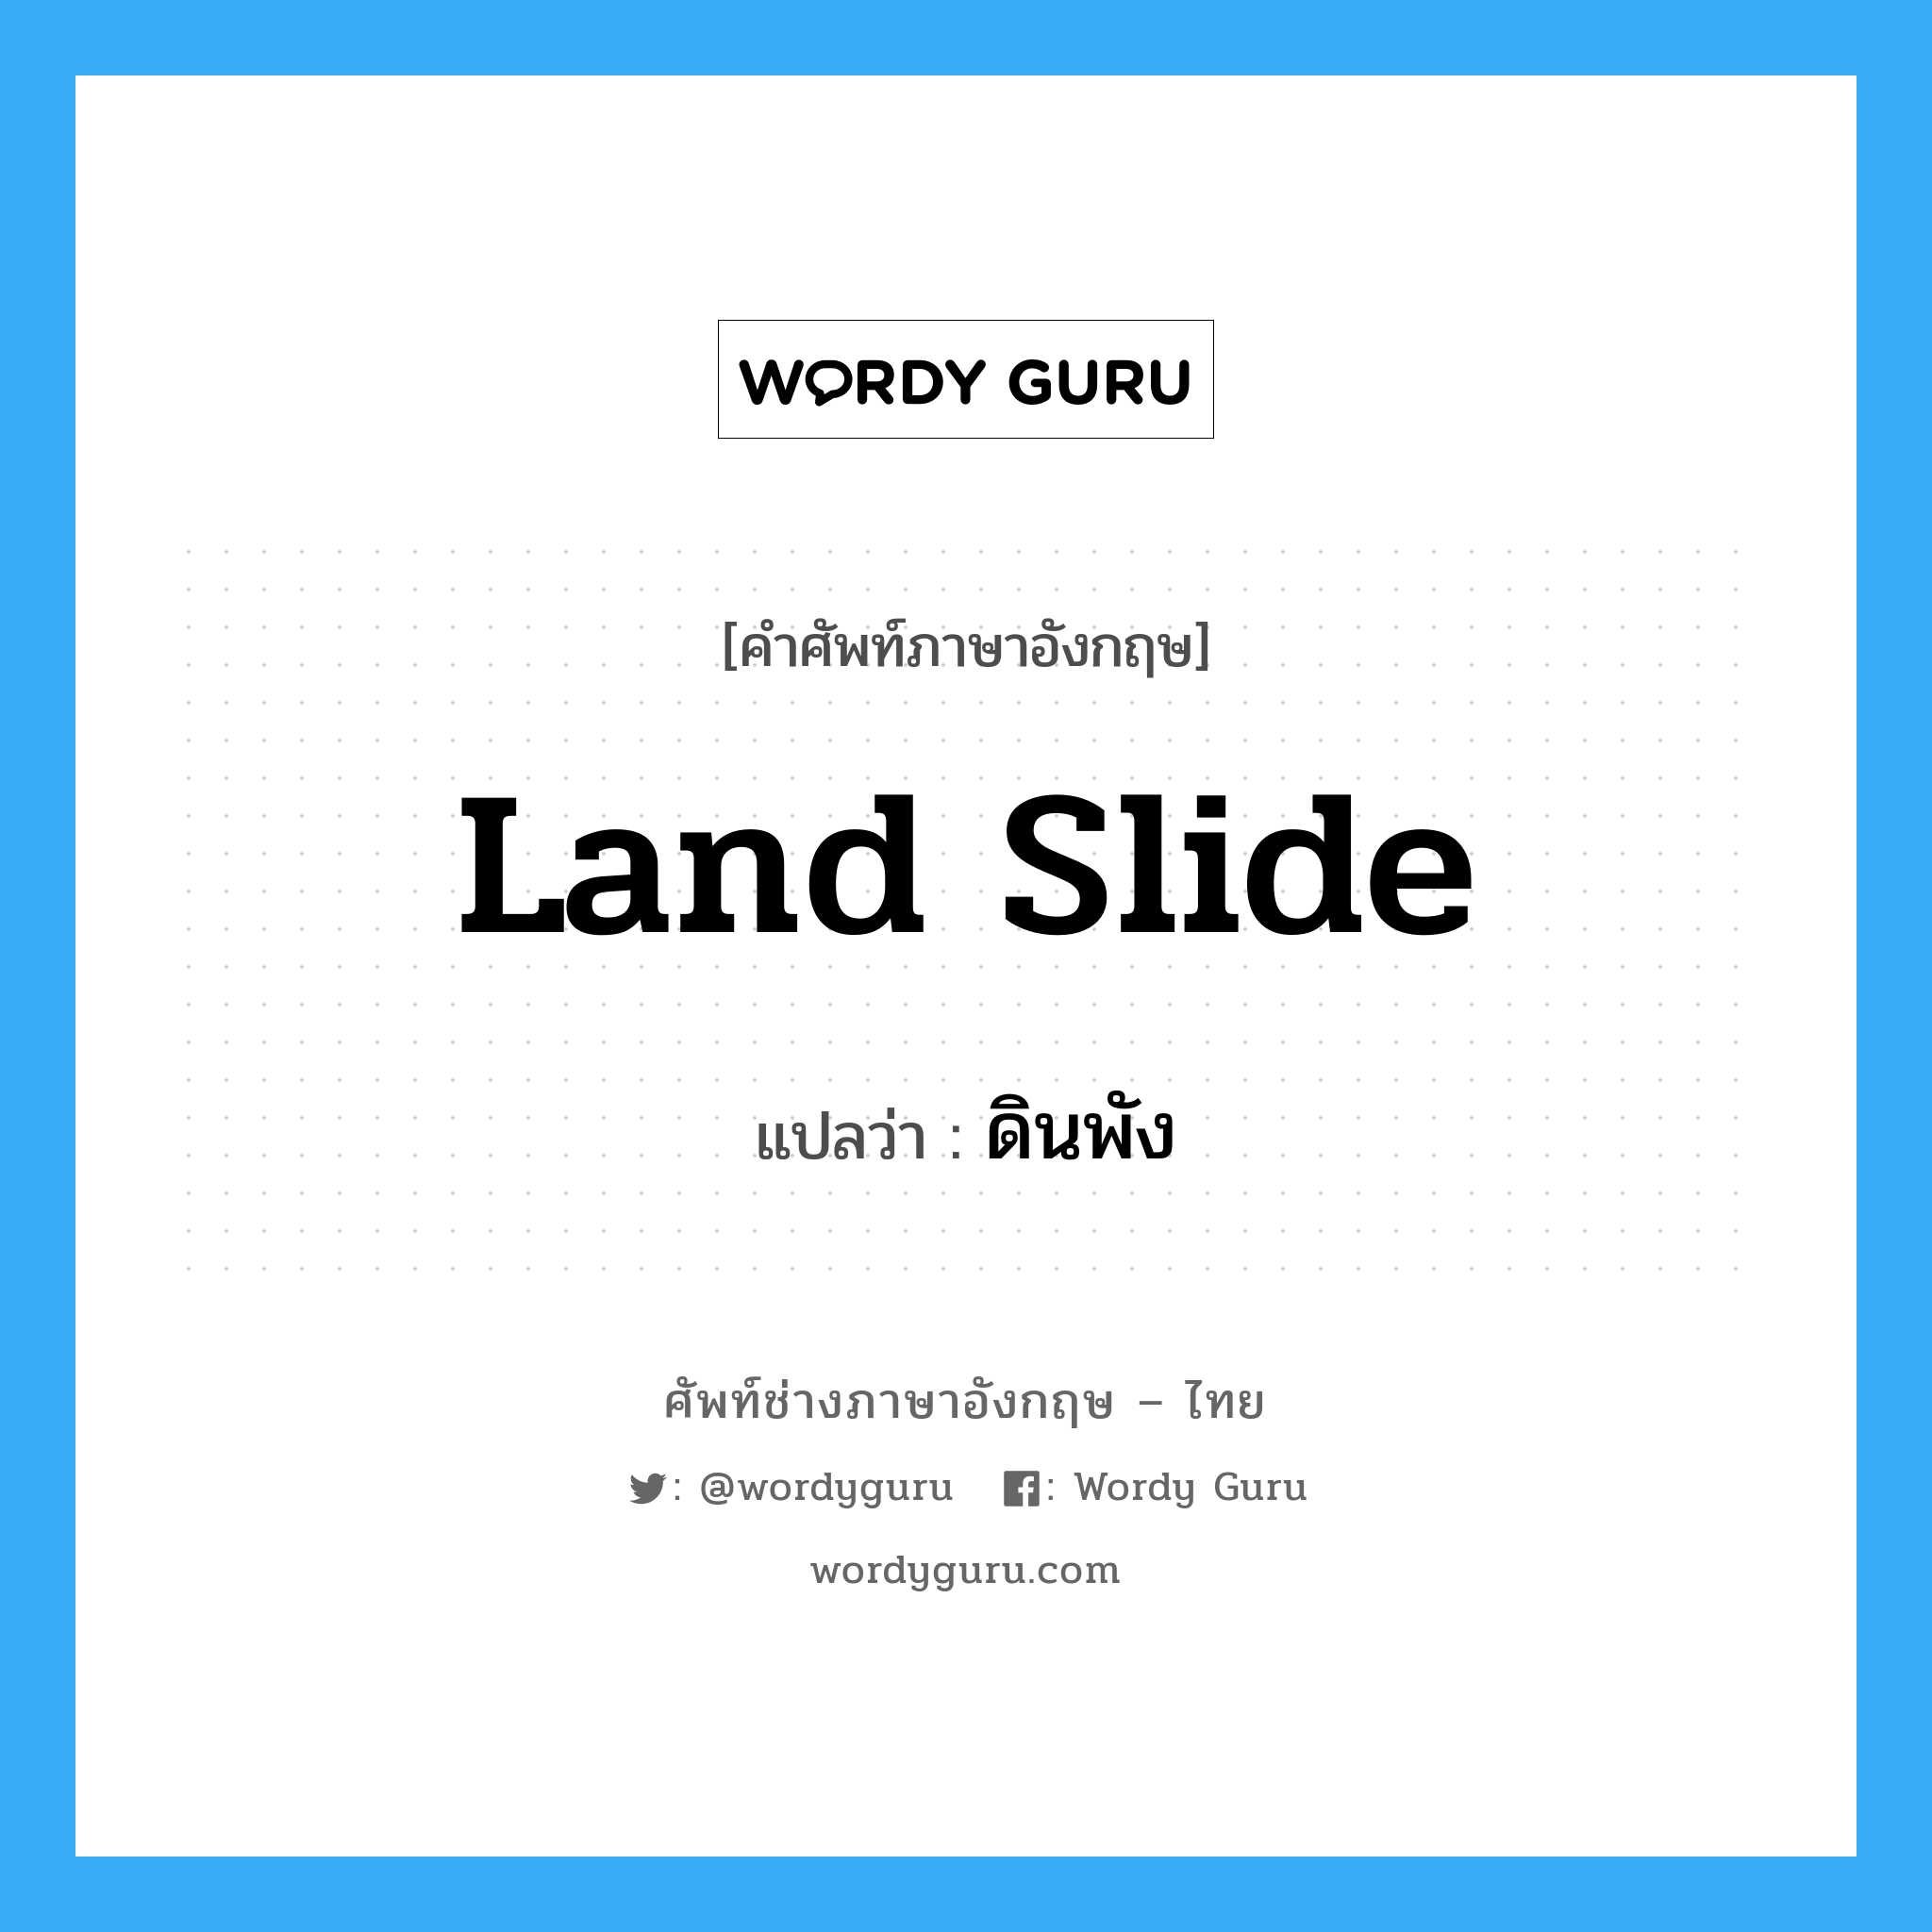 land slide แปลว่า?, คำศัพท์ช่างภาษาอังกฤษ - ไทย land slide คำศัพท์ภาษาอังกฤษ land slide แปลว่า ดินพัง